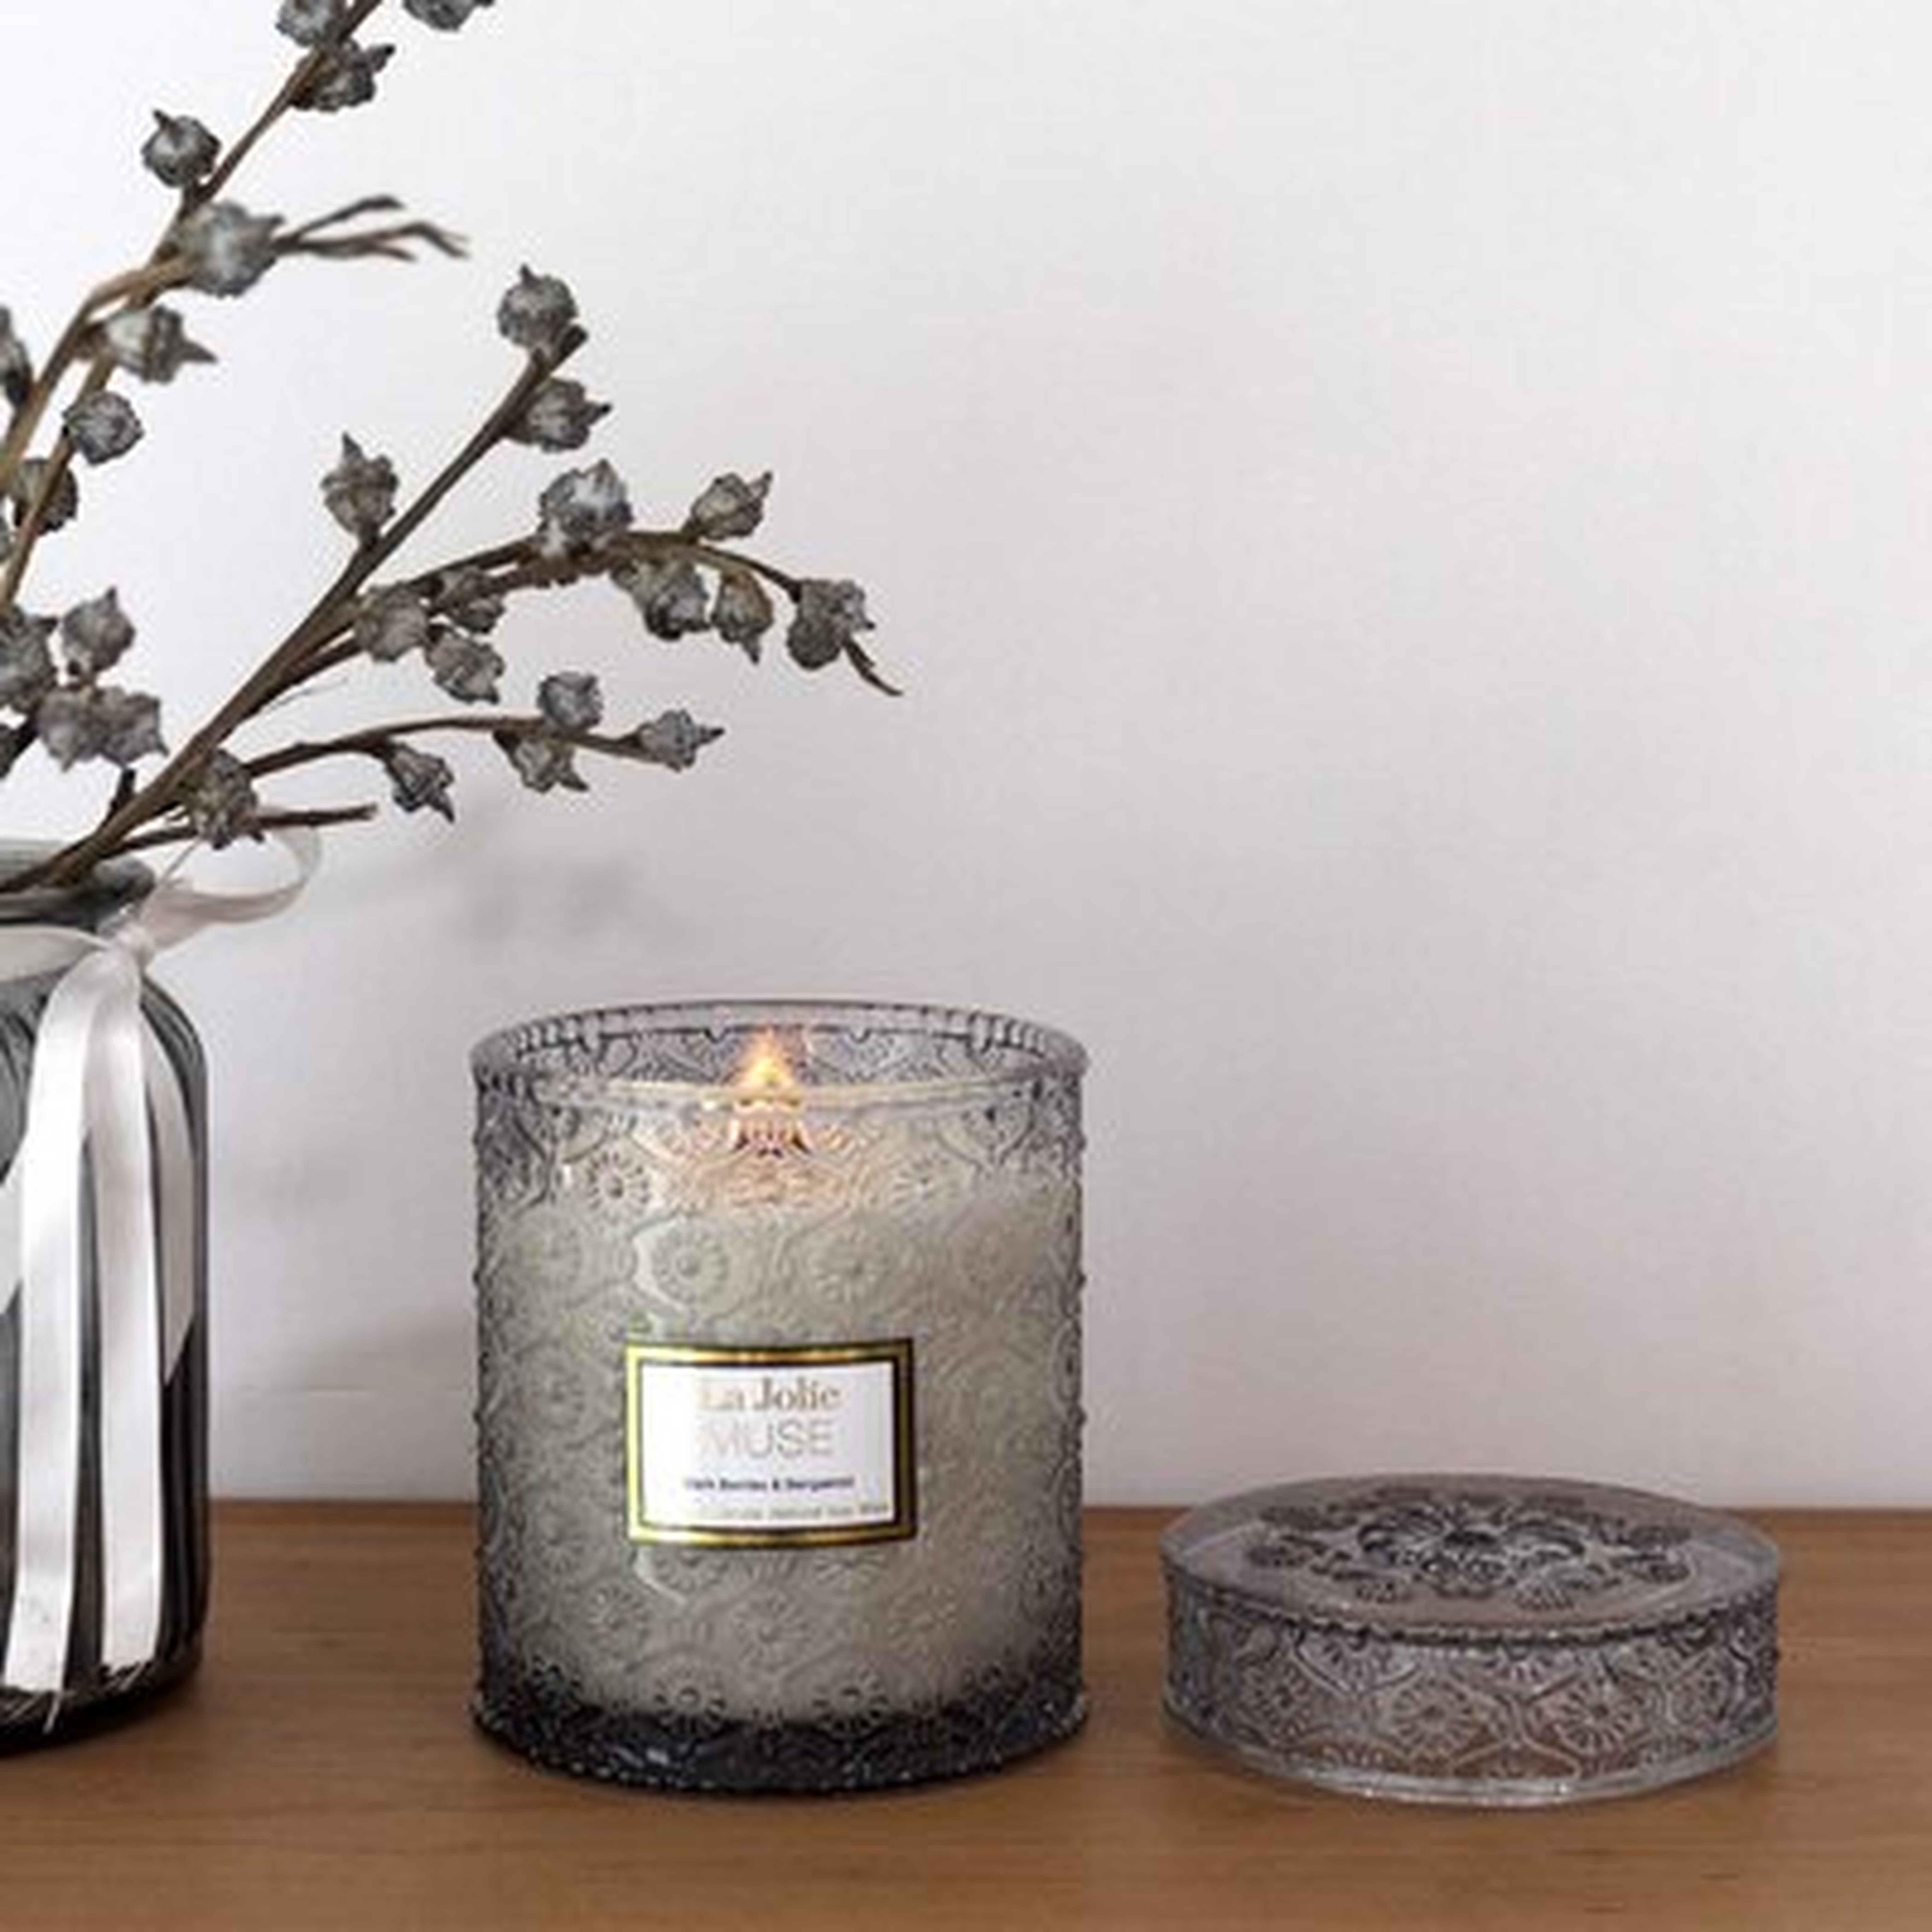 Dark Berries & Bergamot Scented Glass Jar Candle - Wayfair